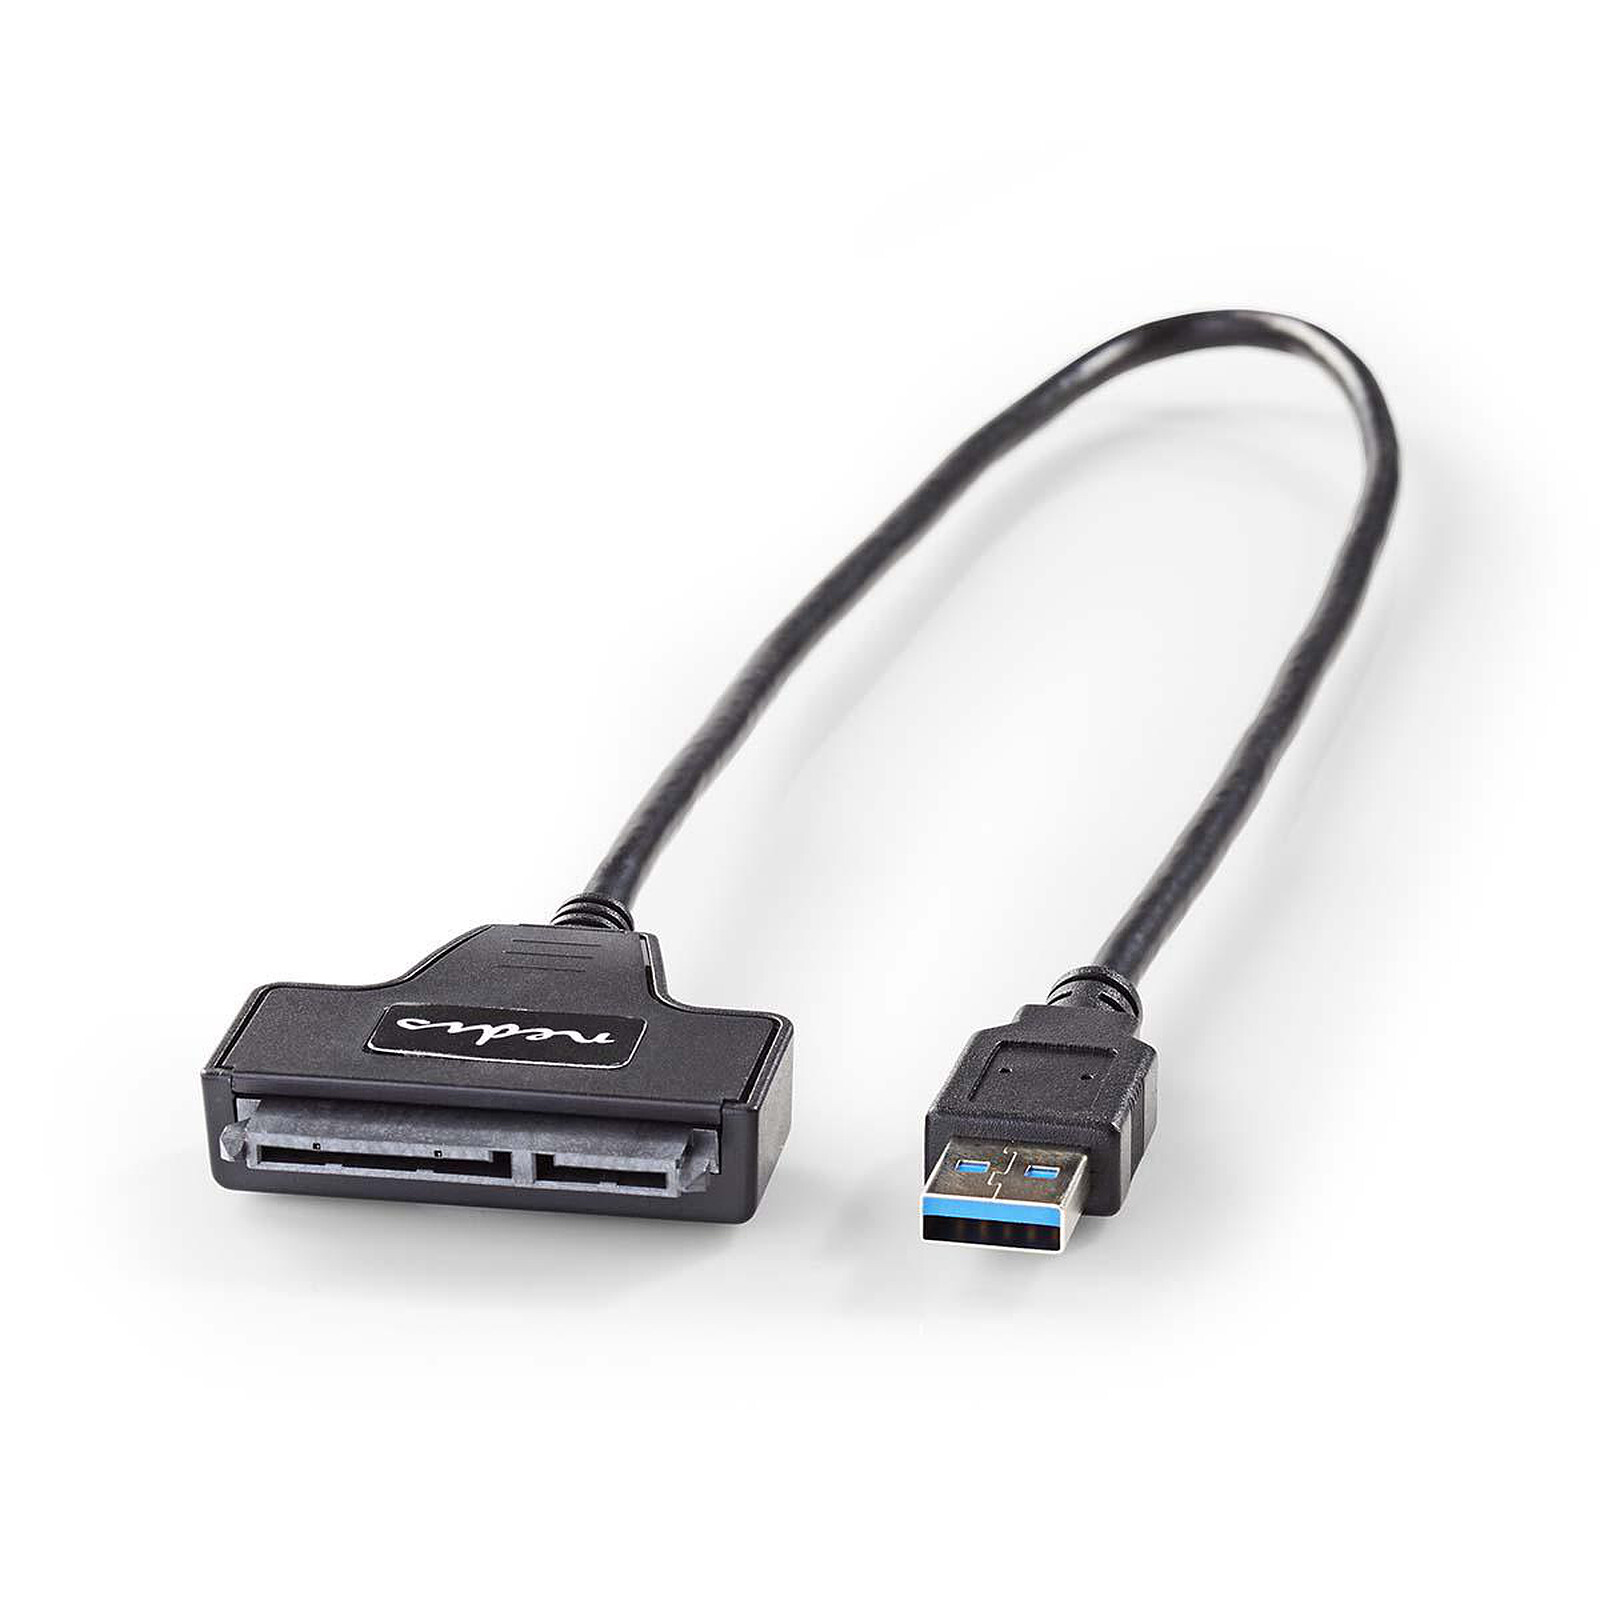 Un adaptateur SATA vers USB 3.0 qu'il sera bien pratique